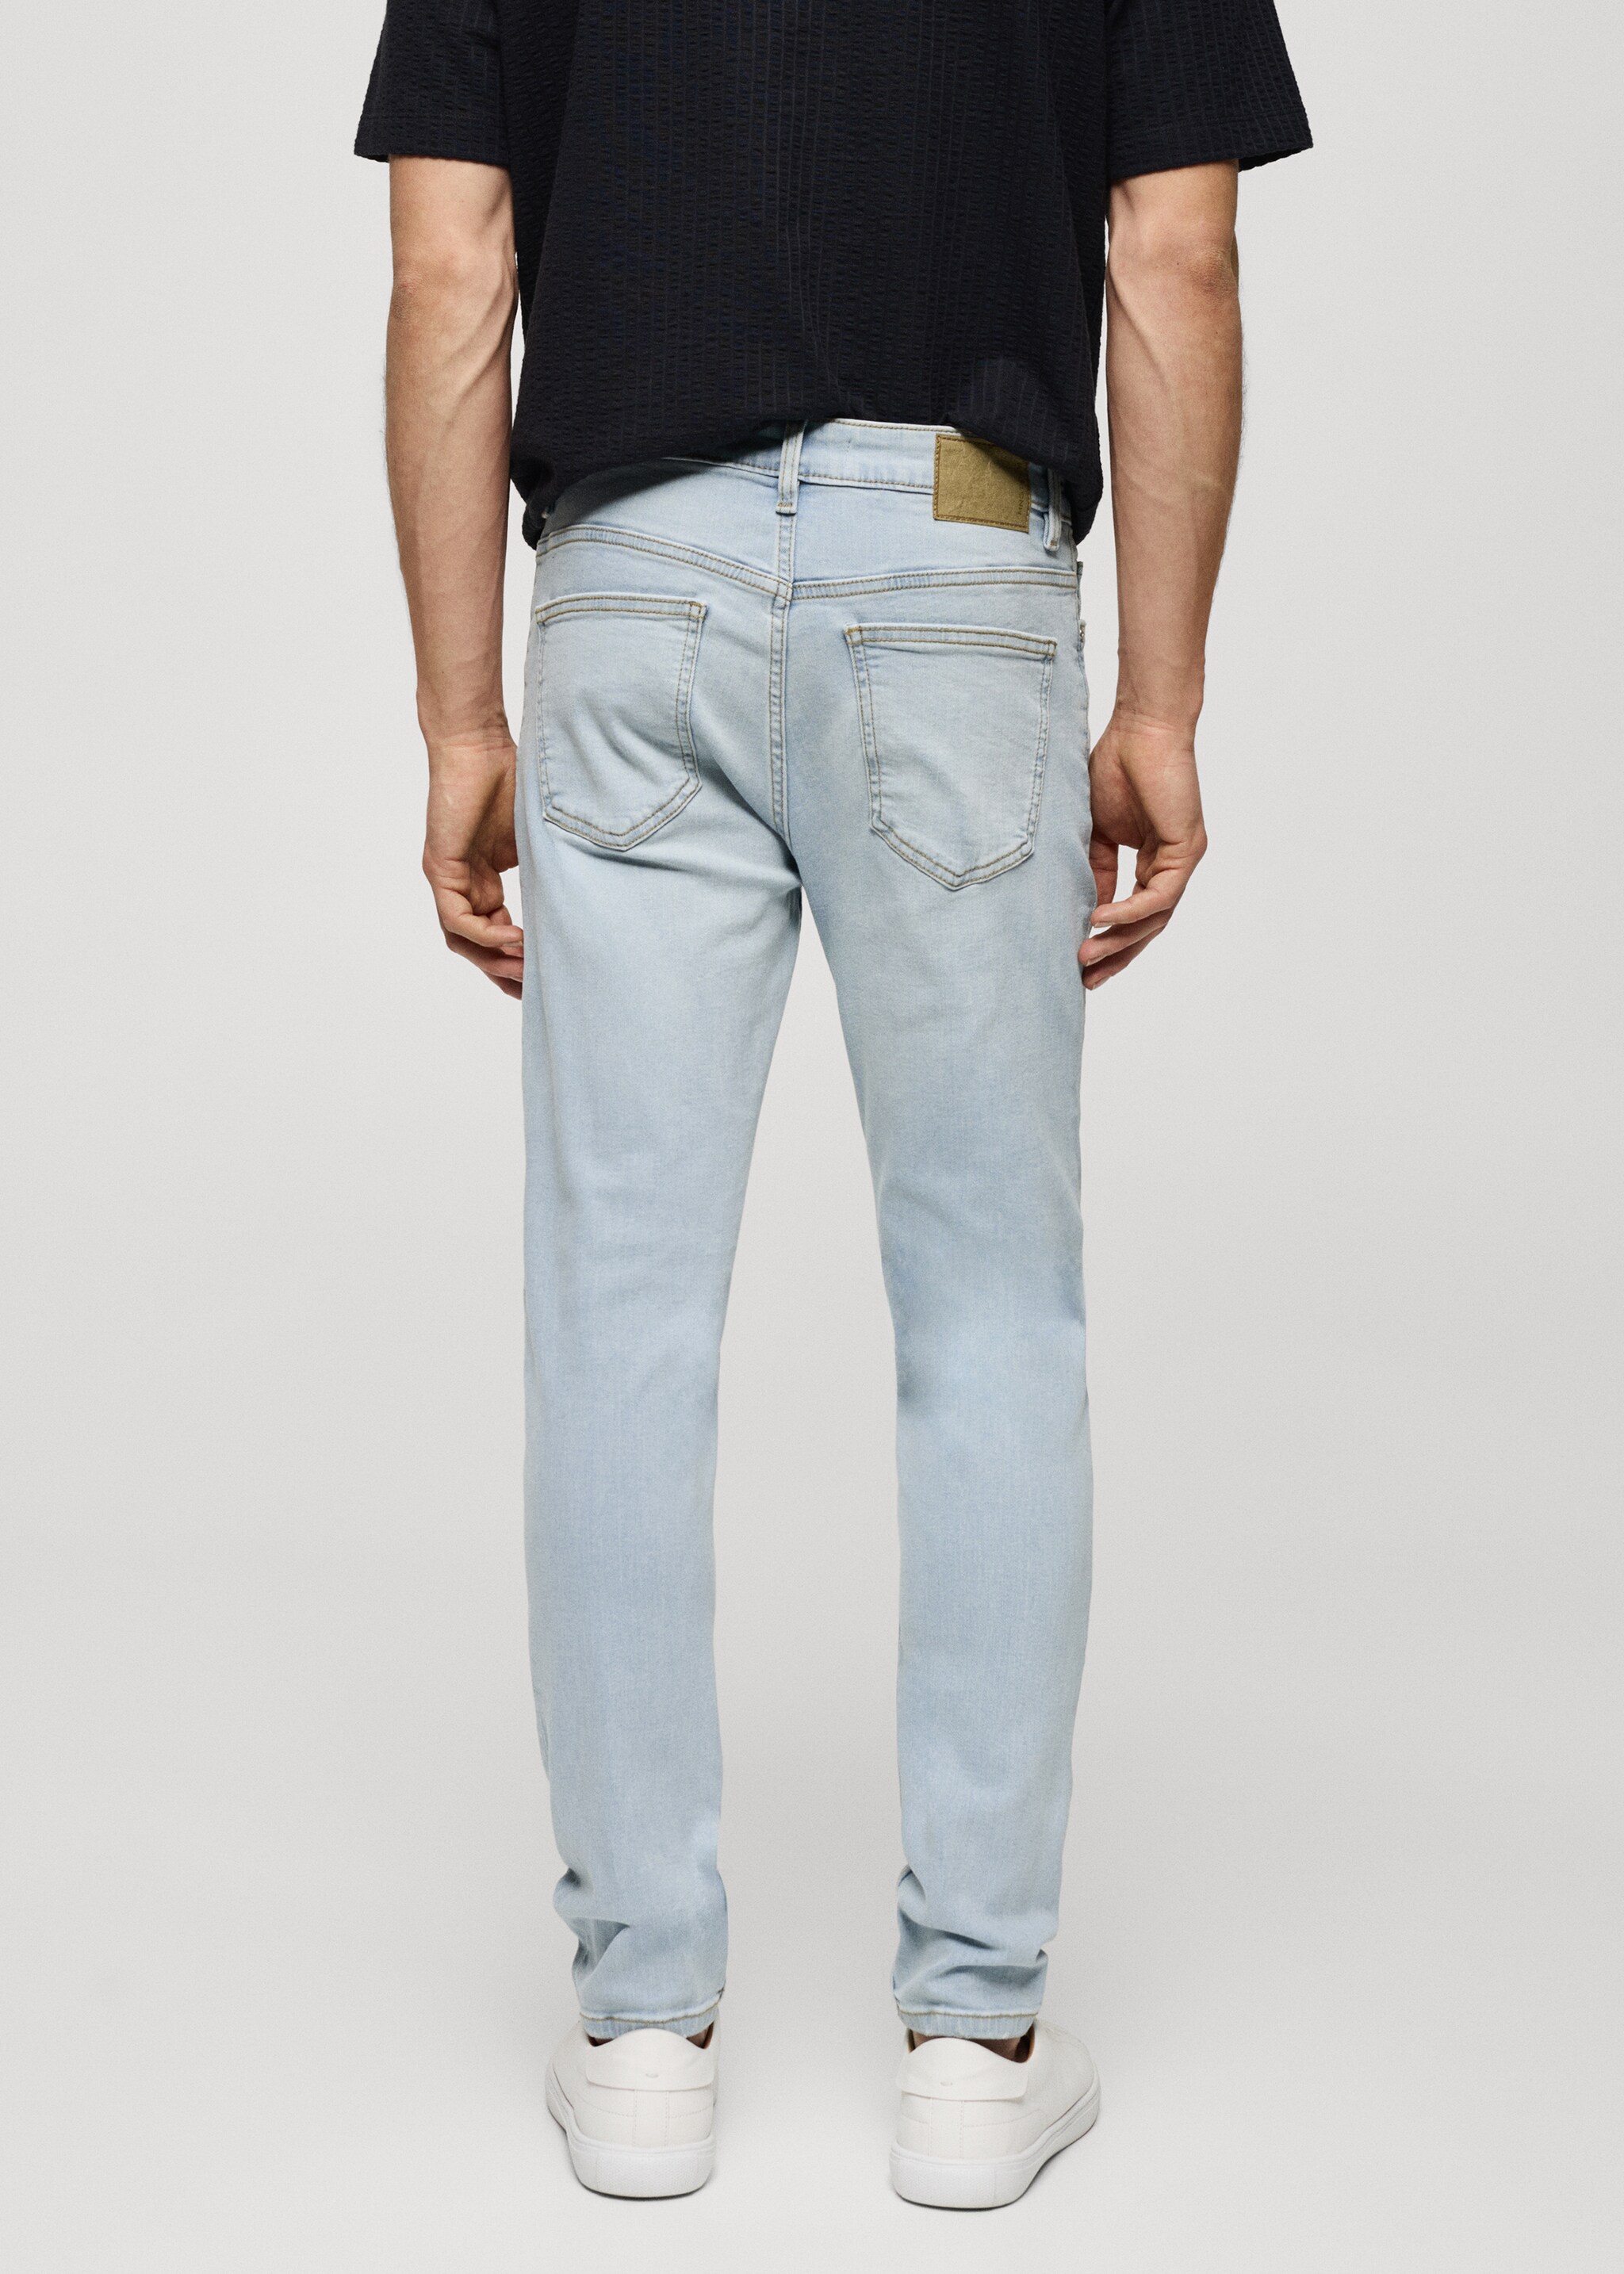 Jeans Jude skinny fit - Reverso del artículo